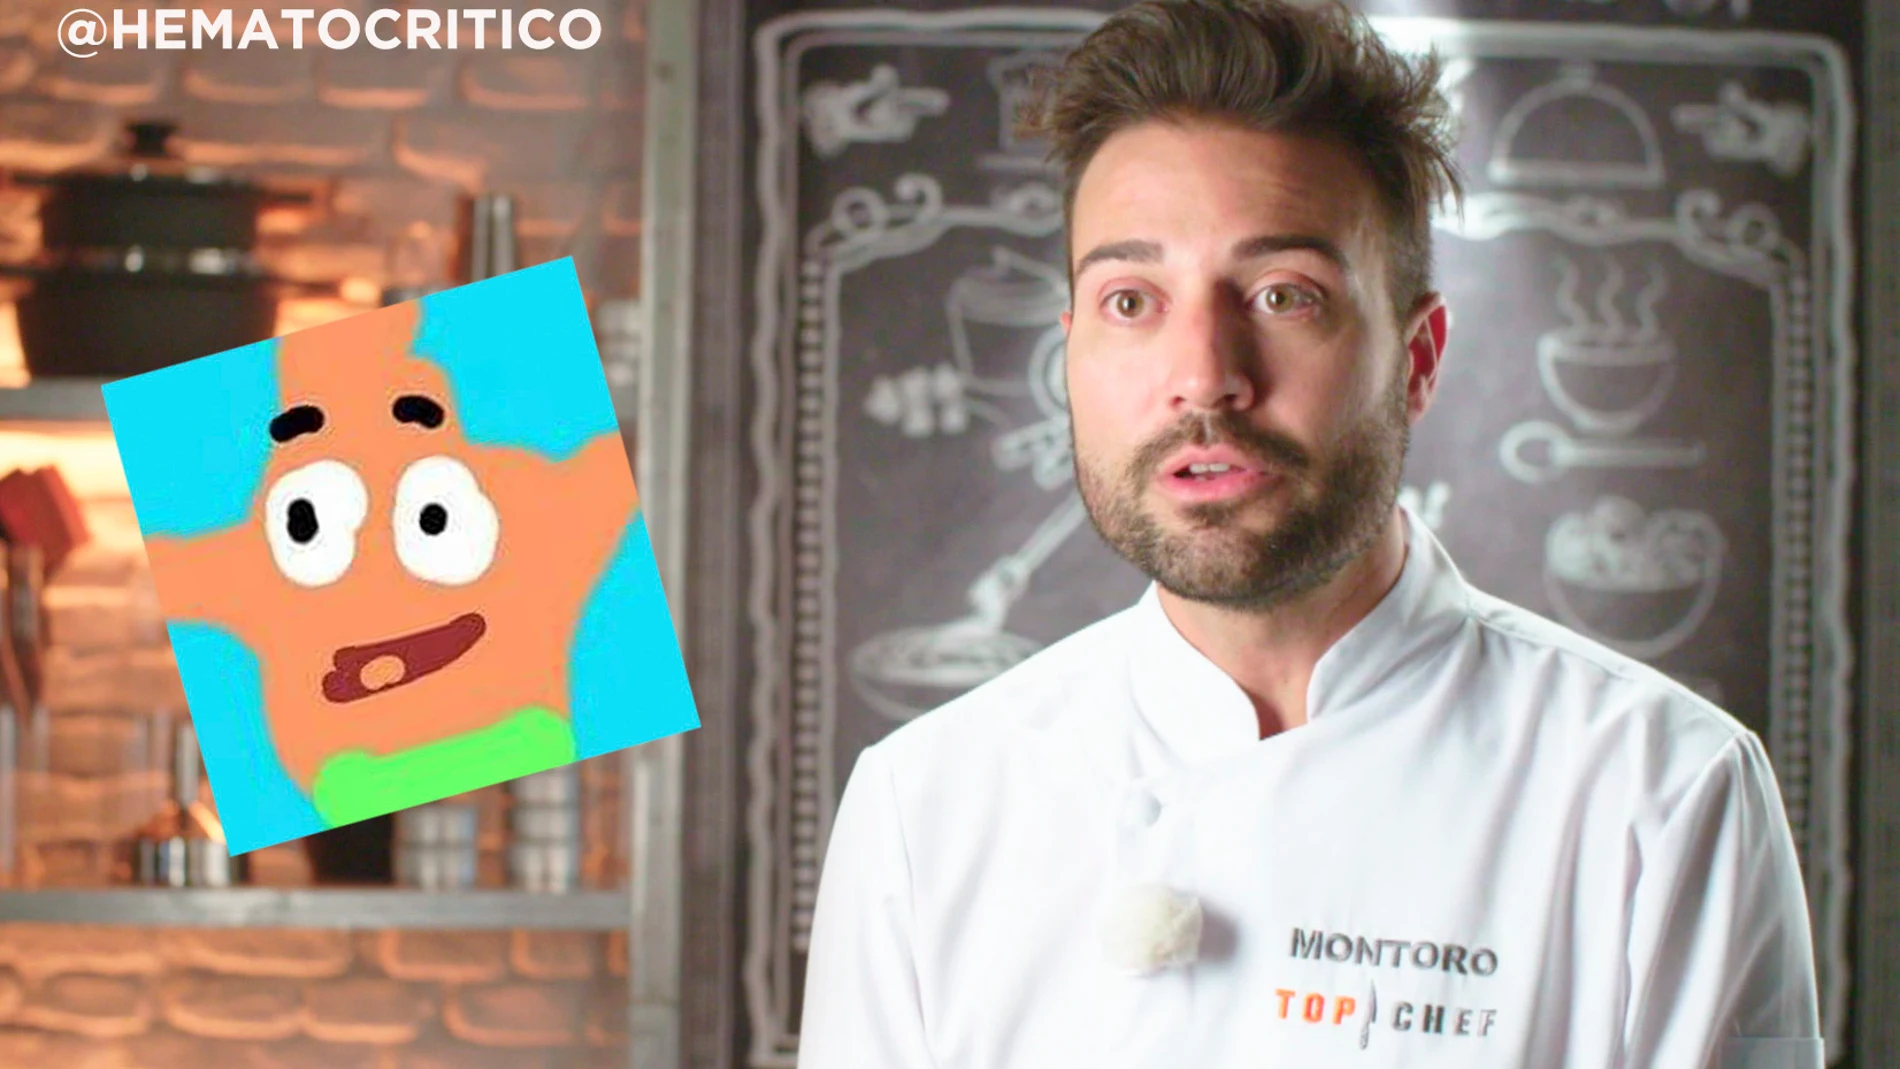 "Las estrategias de Montoro para ganar 'Top Chef'", por @hematocrítico